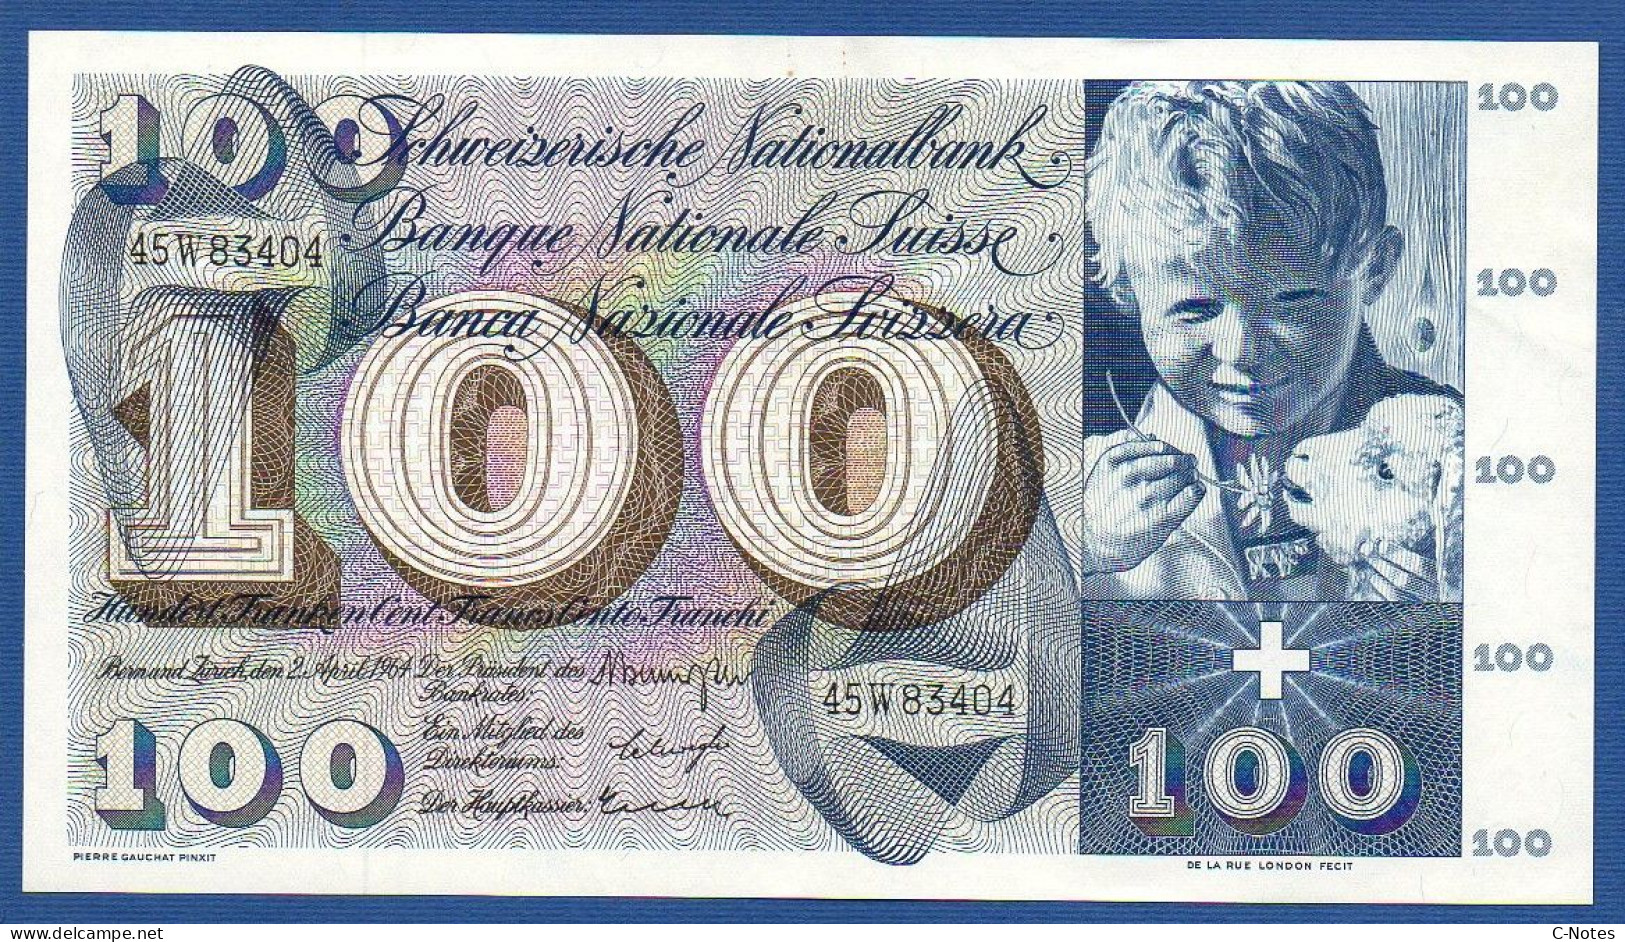 SWITZERLAND - P.49f(1) - 100 Francs 1964 AUNC, Serie 45W83404  -signatures: Brenno Galli / Schwegler / Kunz - Switzerland